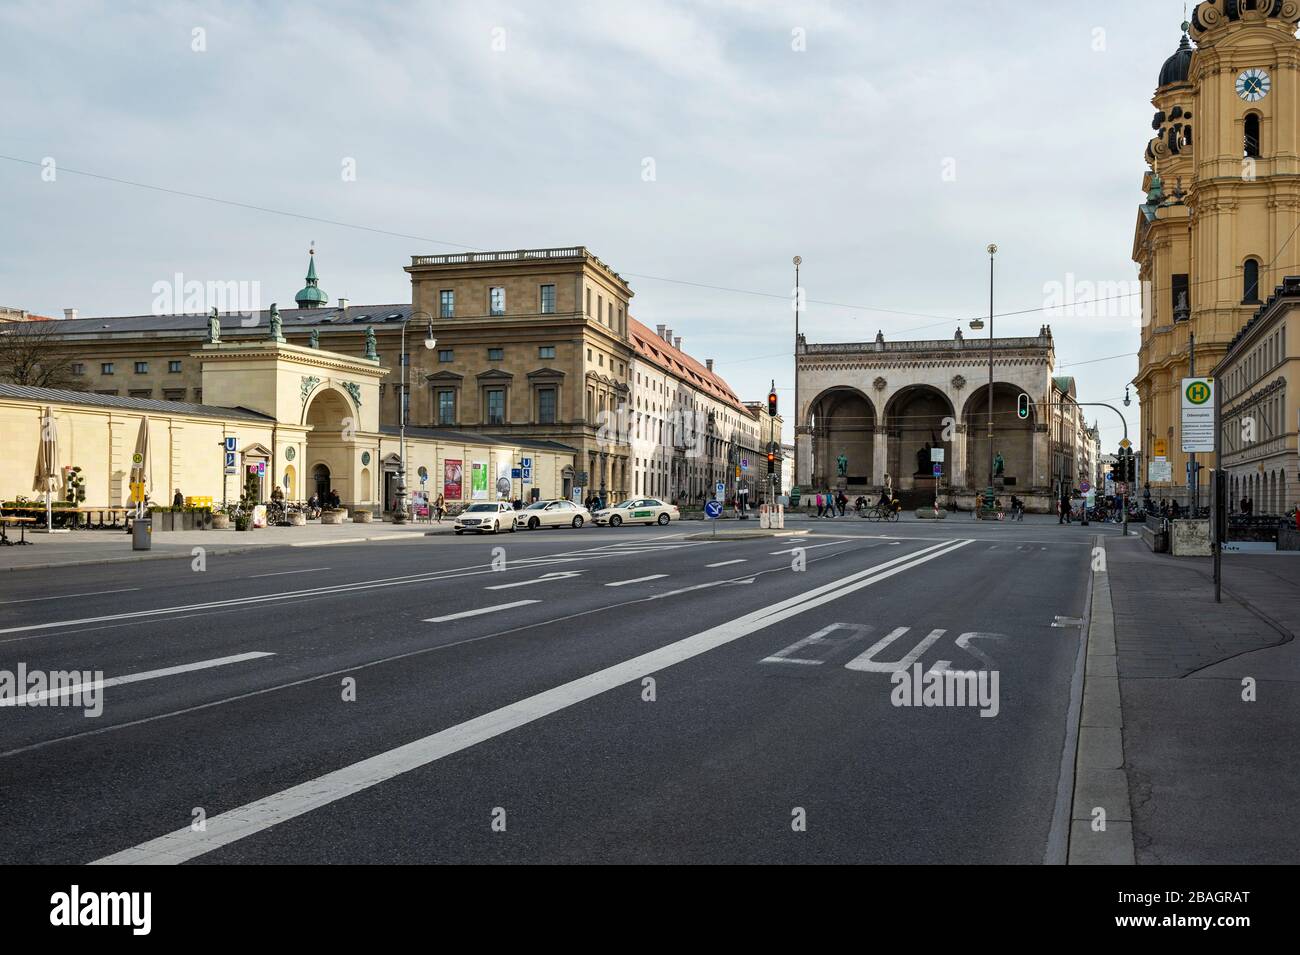 Baviera-Monaco-Germania, 27. Marzo 2020: Strade vuote a Odeonsplatz, Monaco di Baviera a causa della chiusura a causa del virus corona Foto Stock